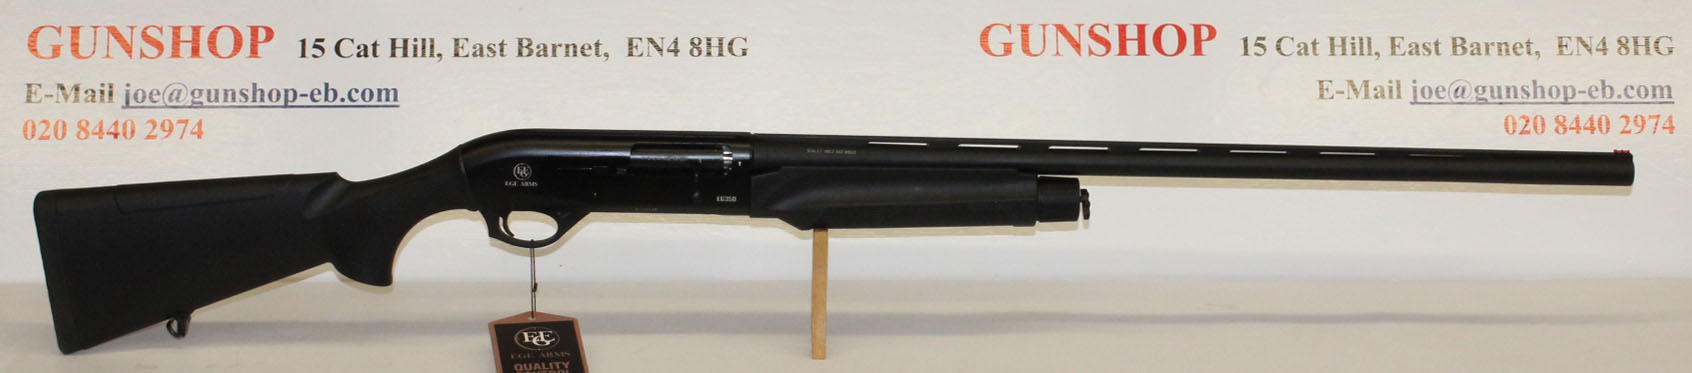 Escort Magnum 88mm RH